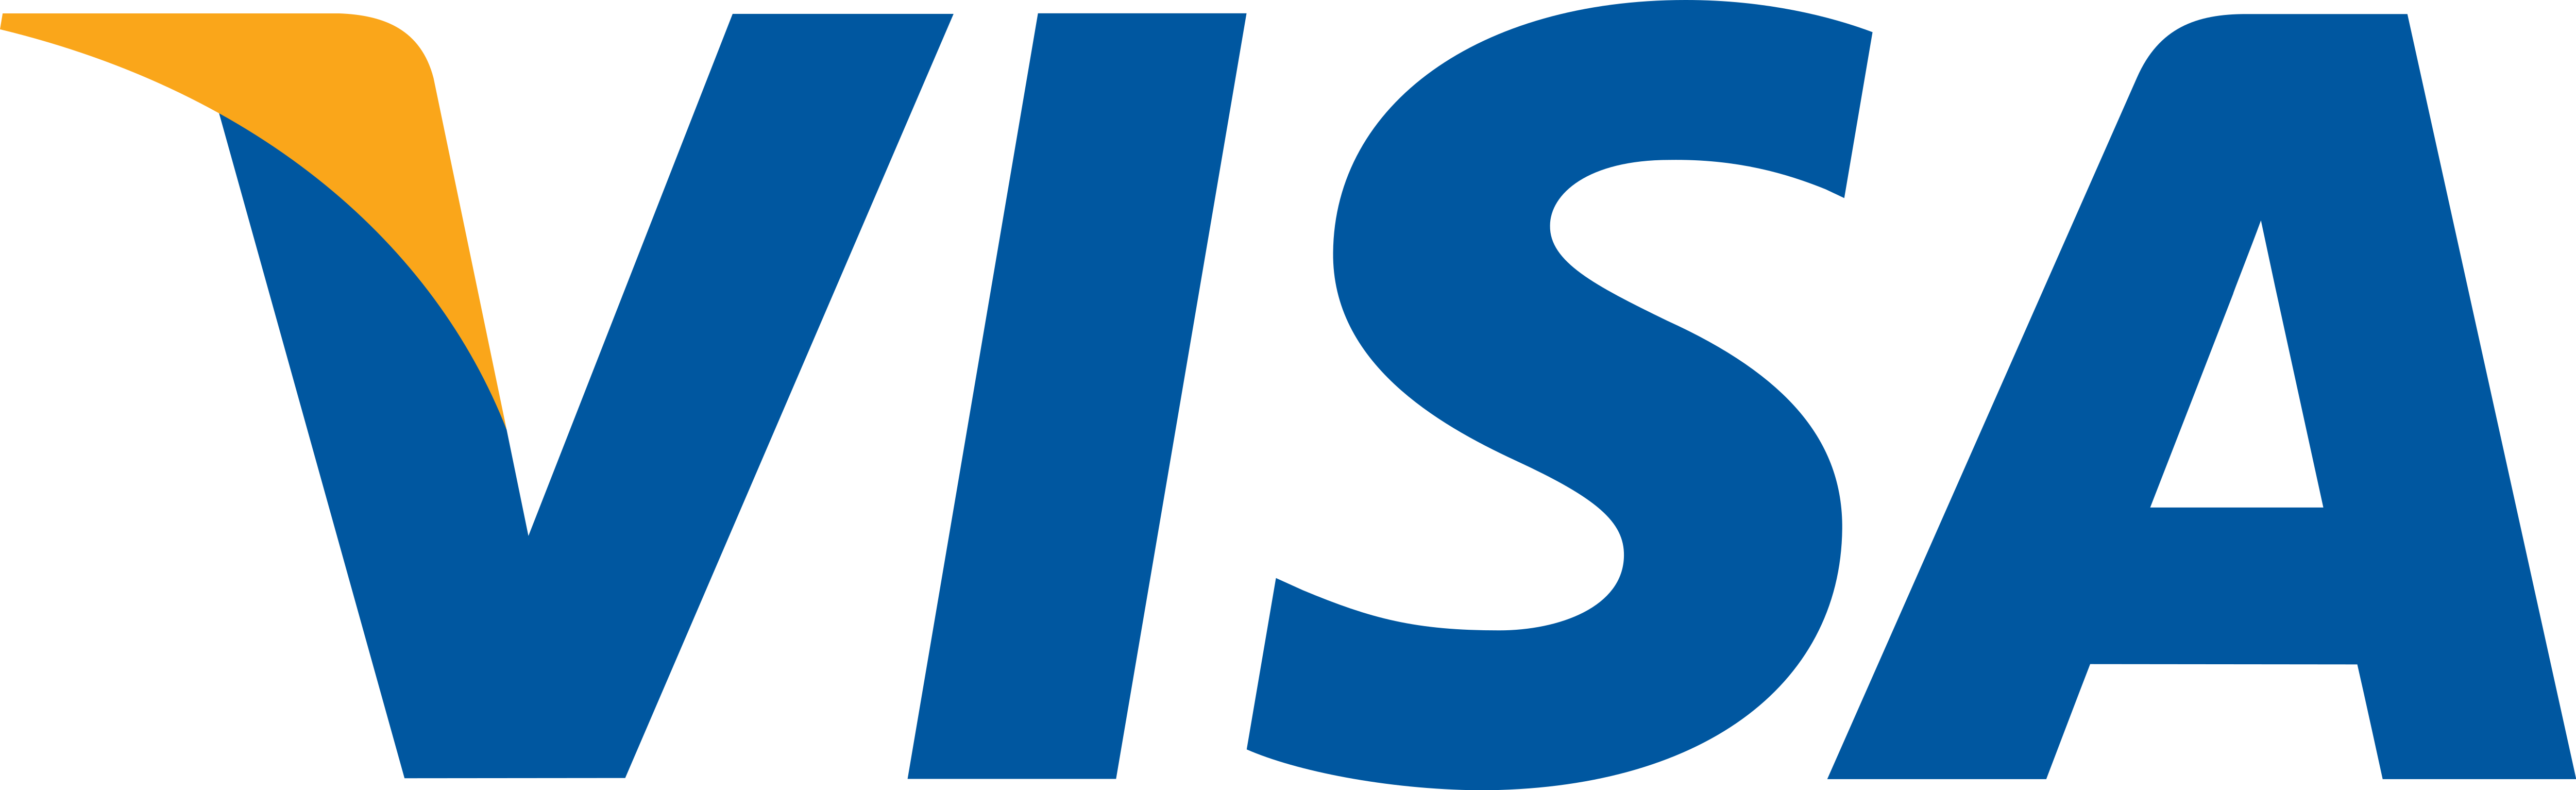 visa logo 1 - Visa Logo